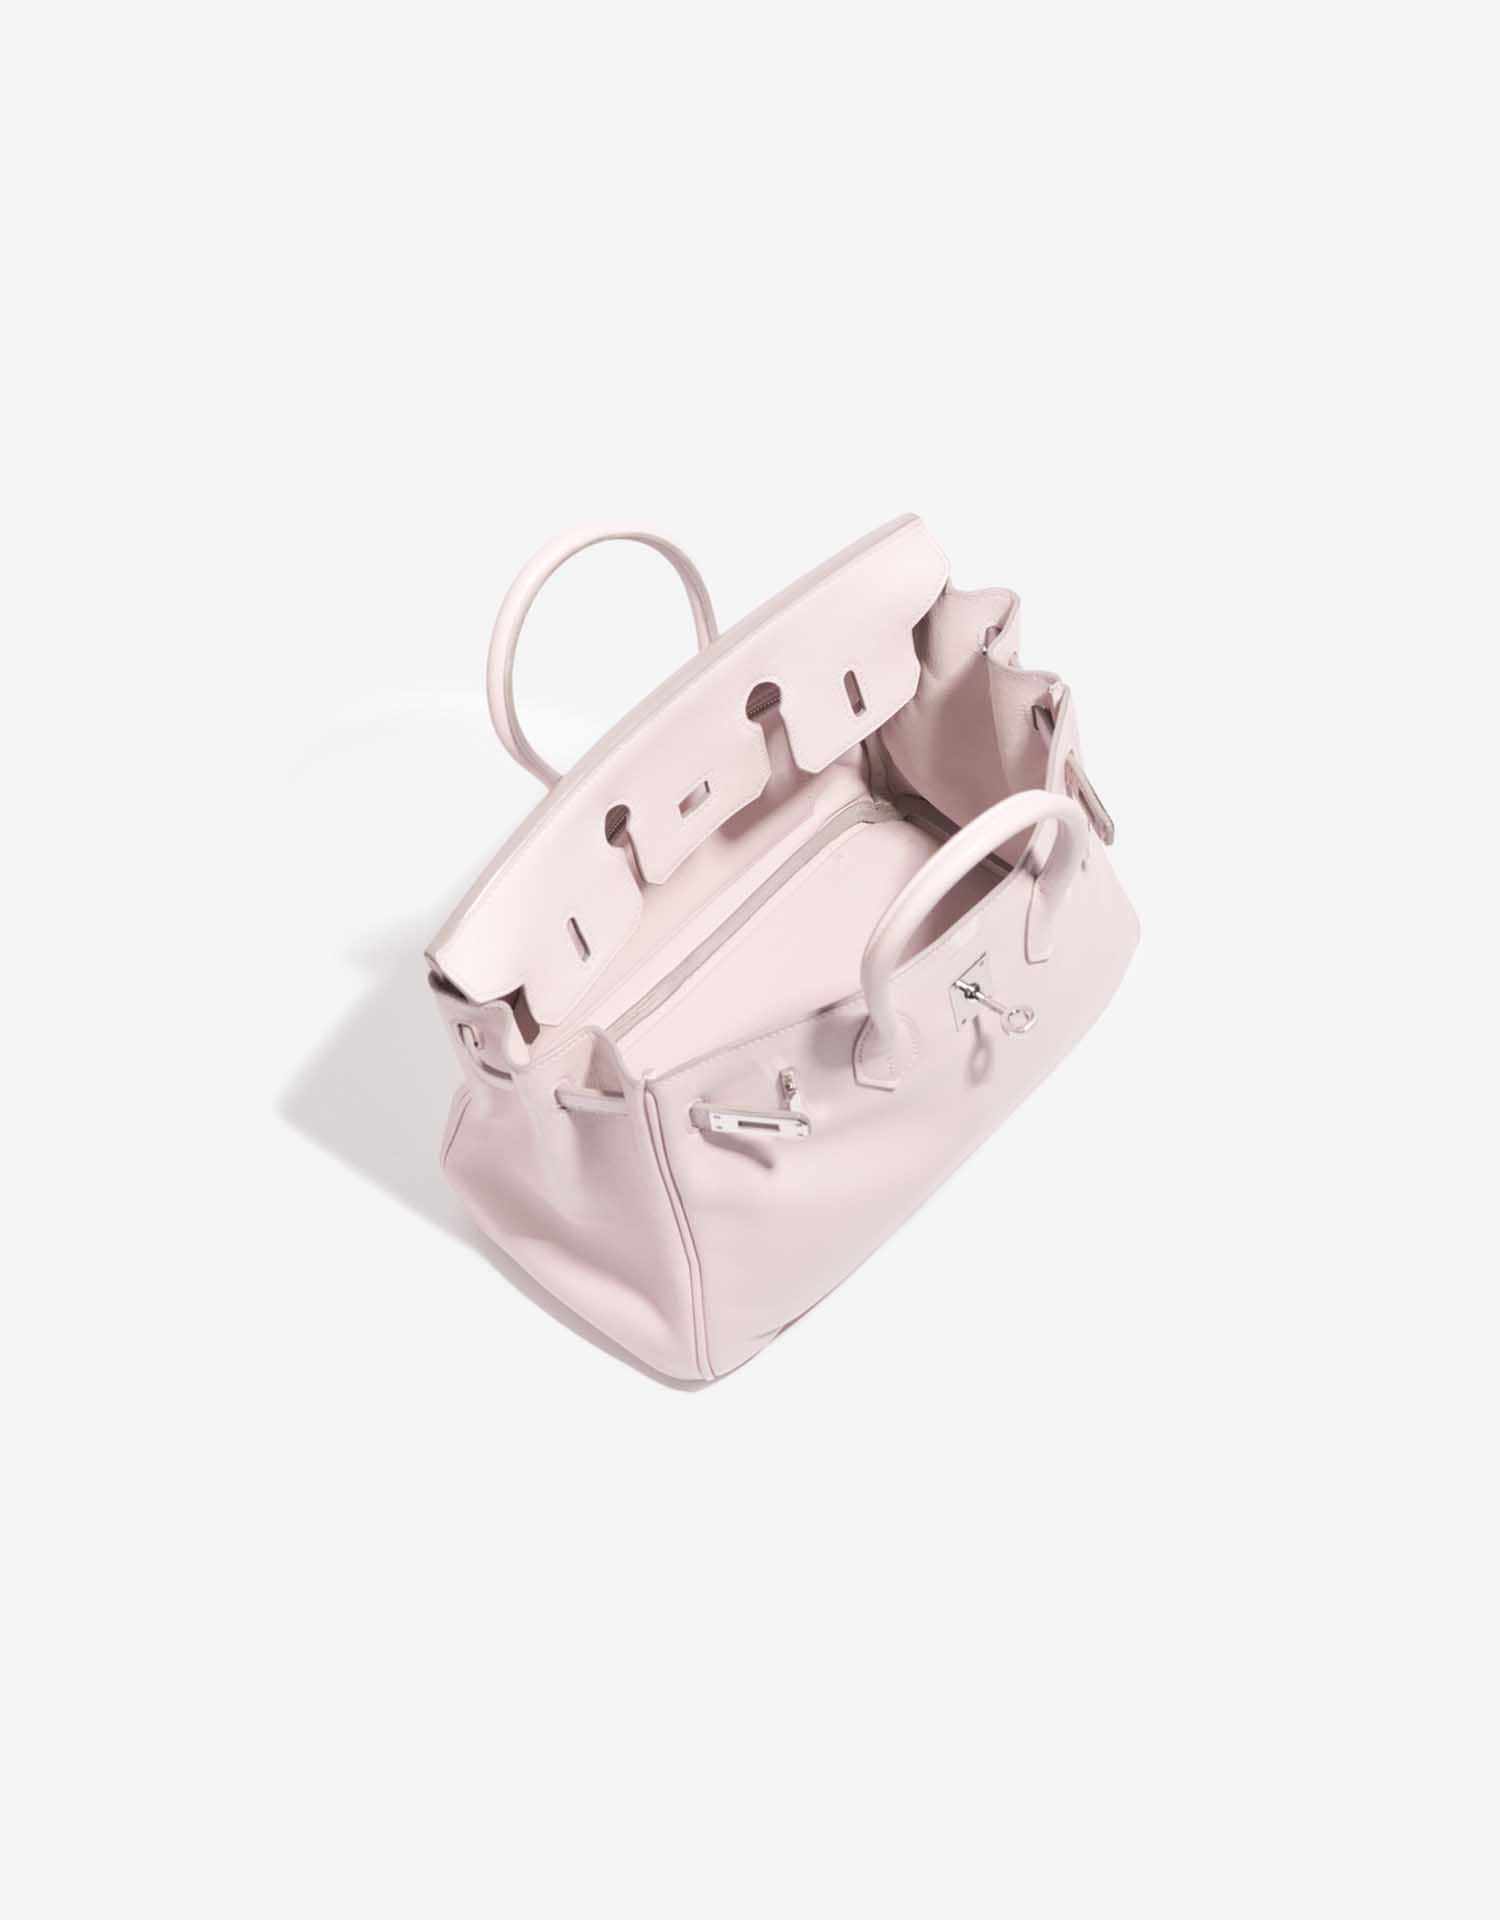 Gebrauchte Hermès Tasche Birkin 25 Swift Rose Dragee Rose Inside | Verkaufen Sie Ihre Designer-Tasche auf Saclab.com